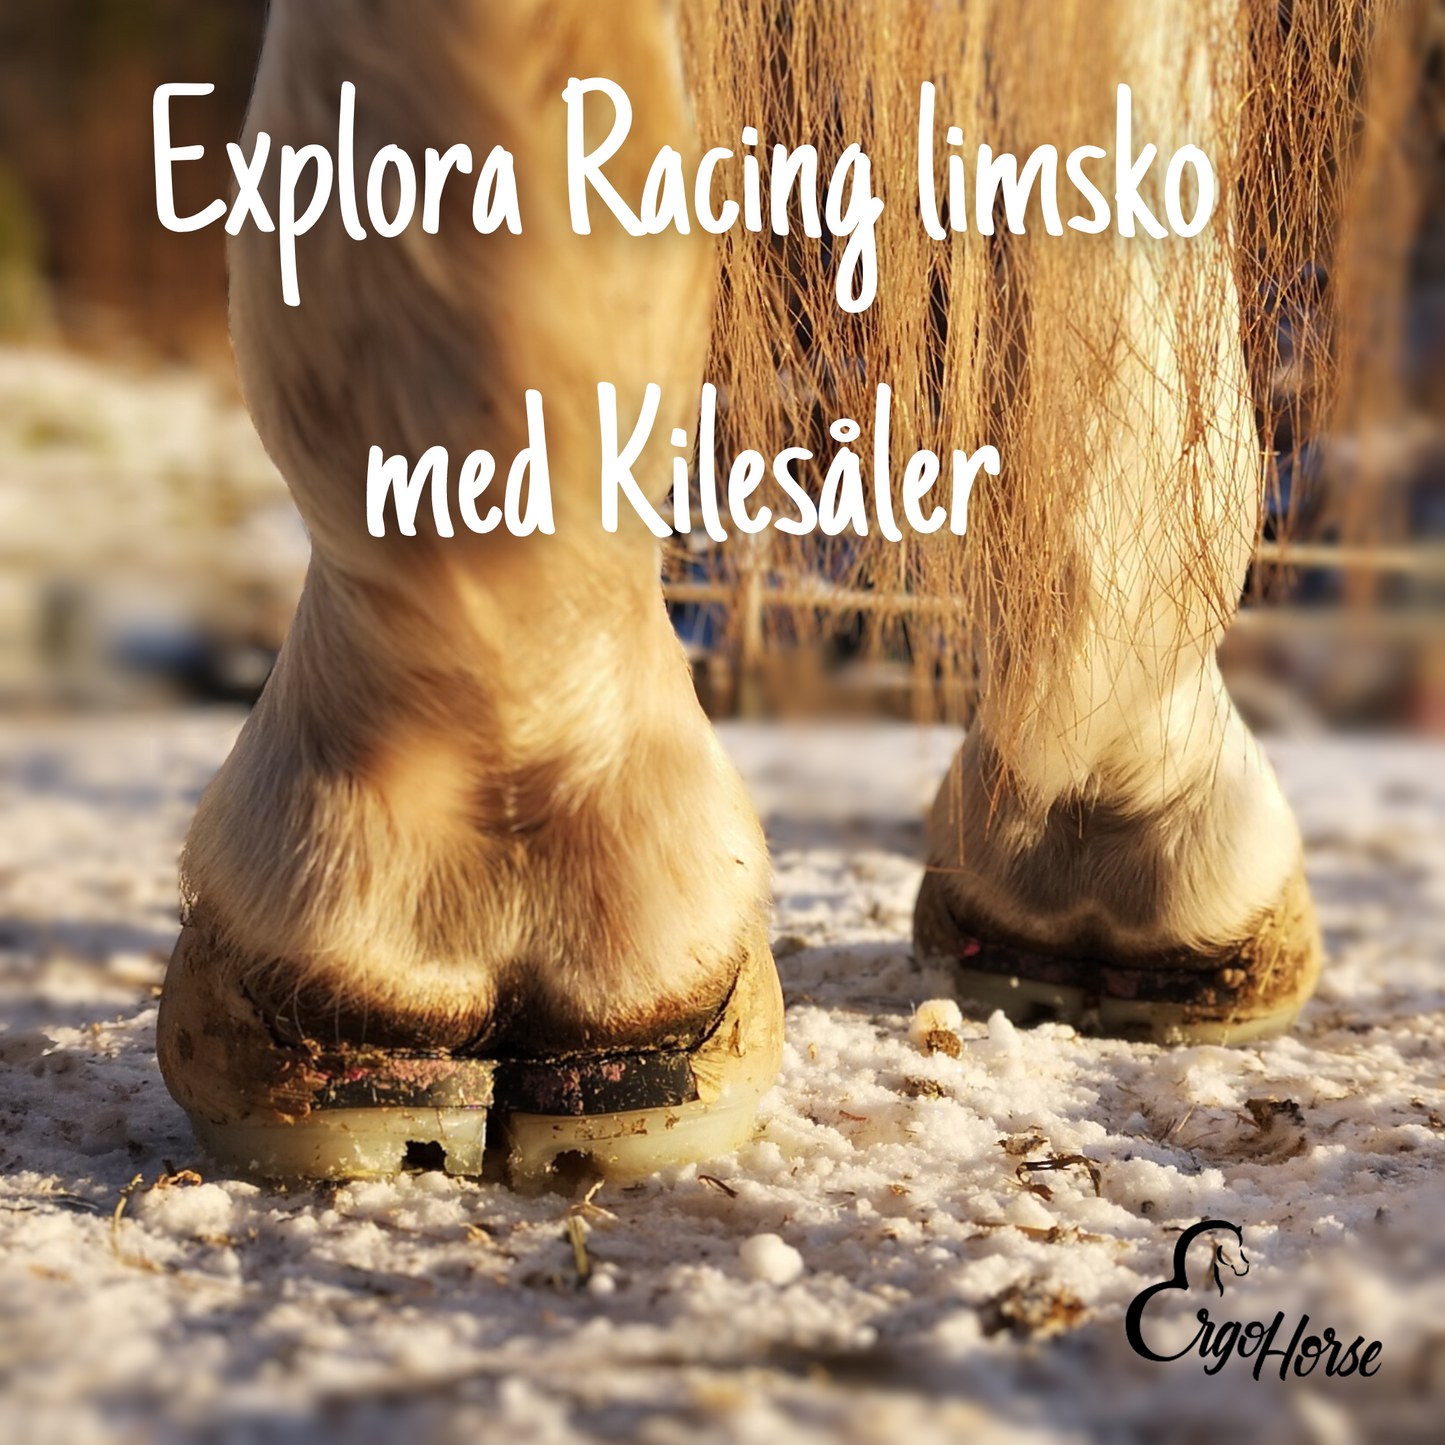 Startkit Explora Racing limsko - Pakkepris